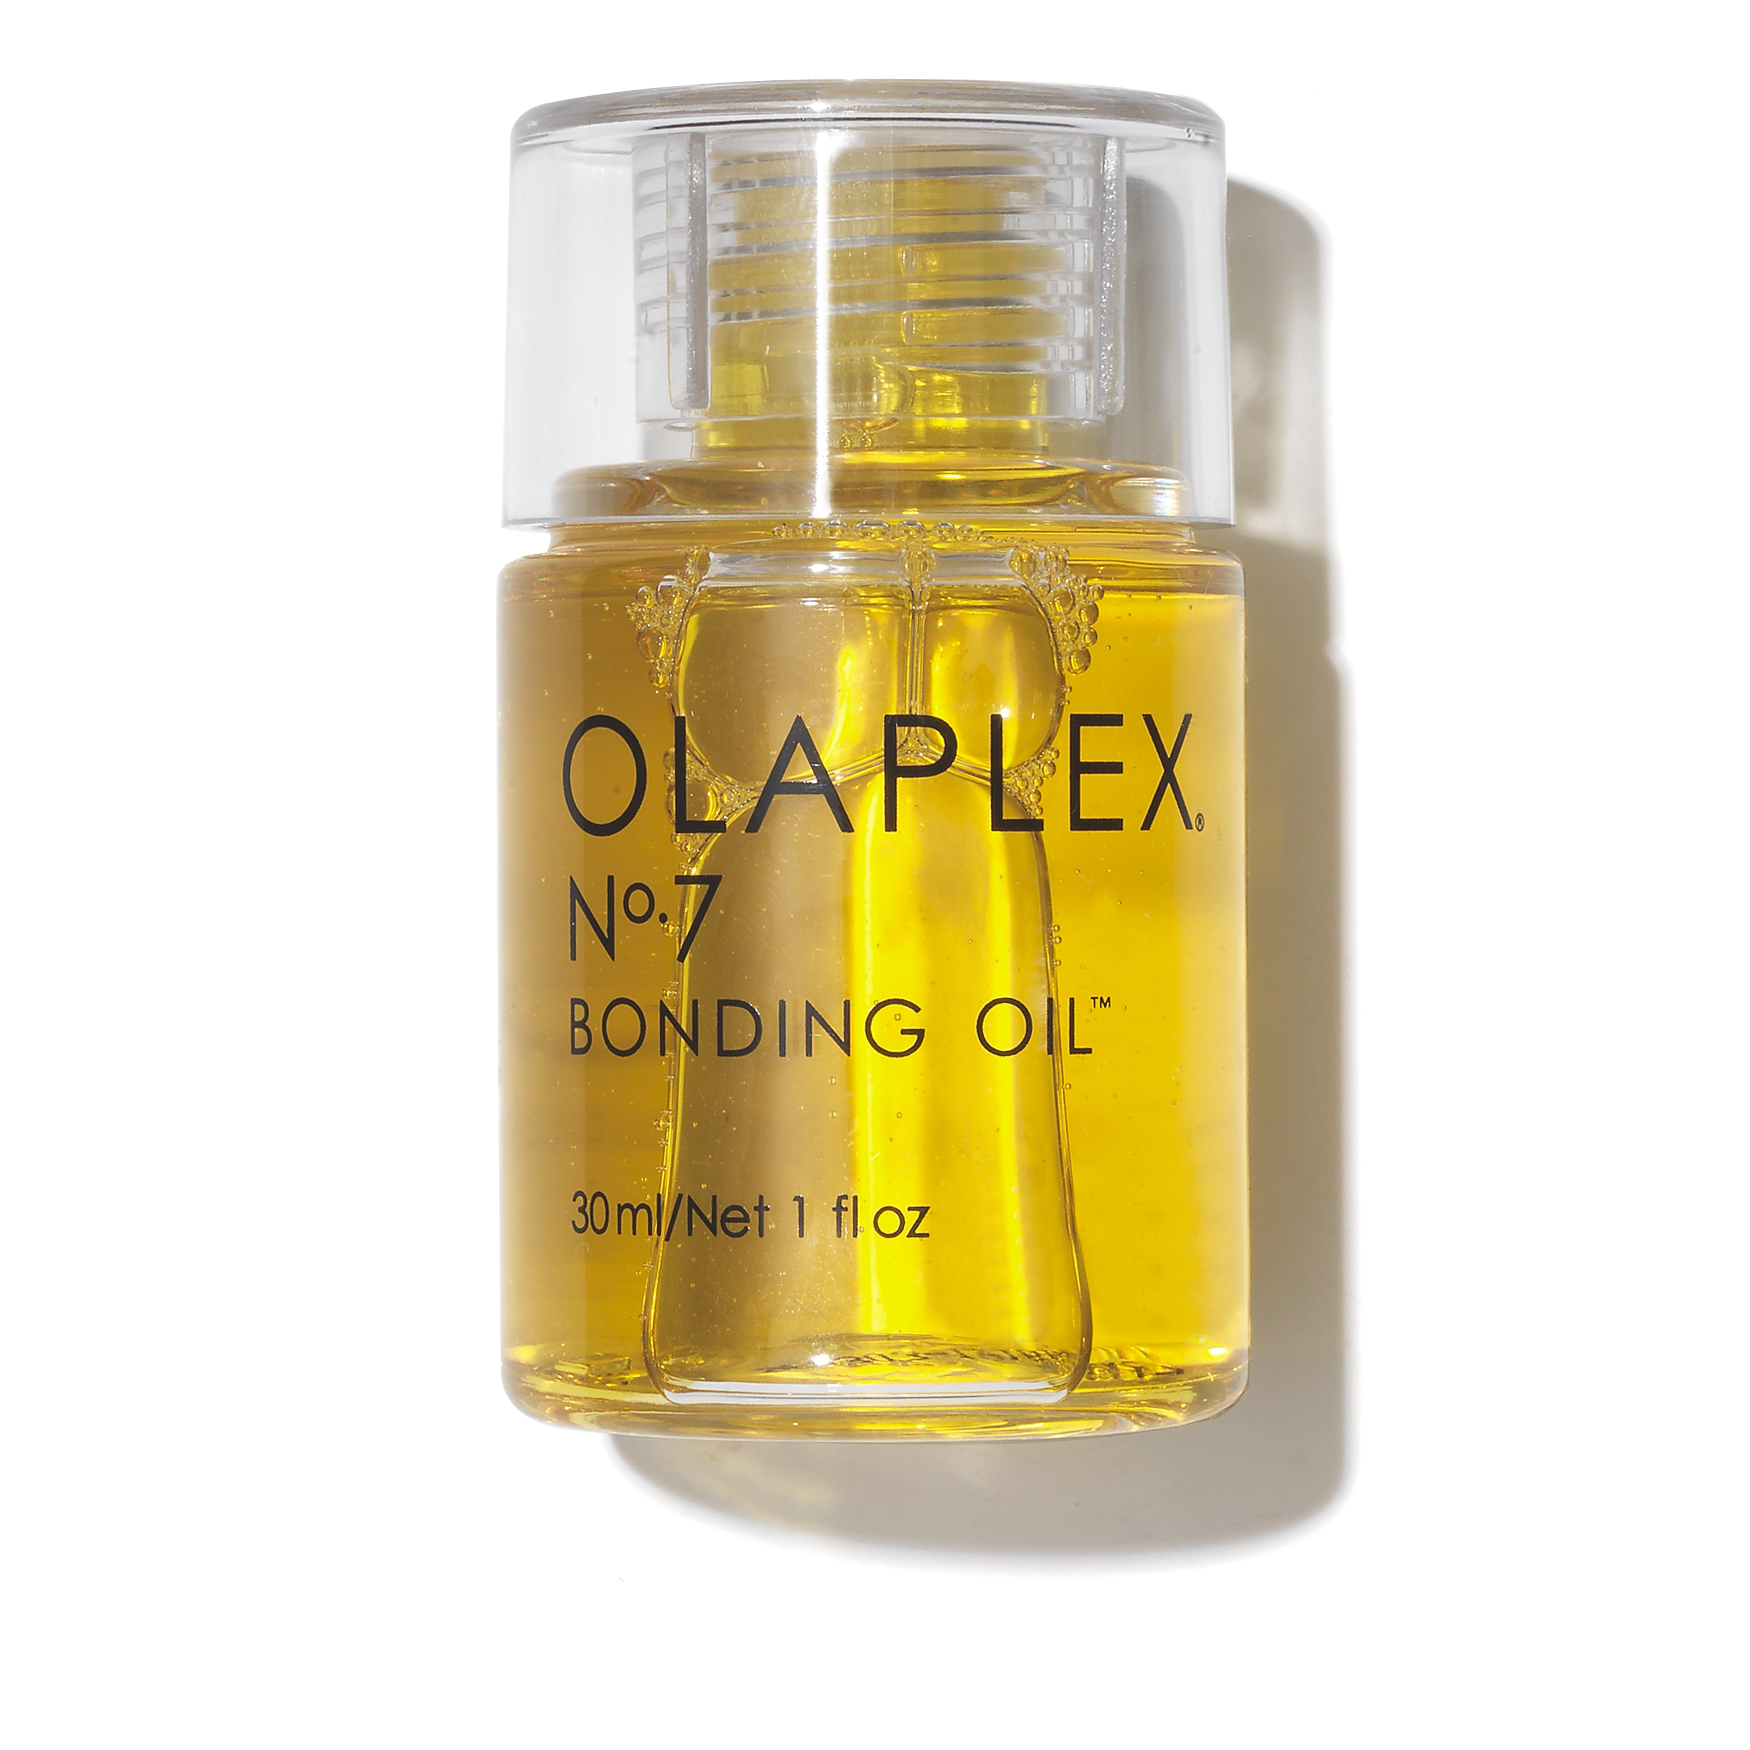 Olaplex No.7 Bonding Oil – Brillo Store